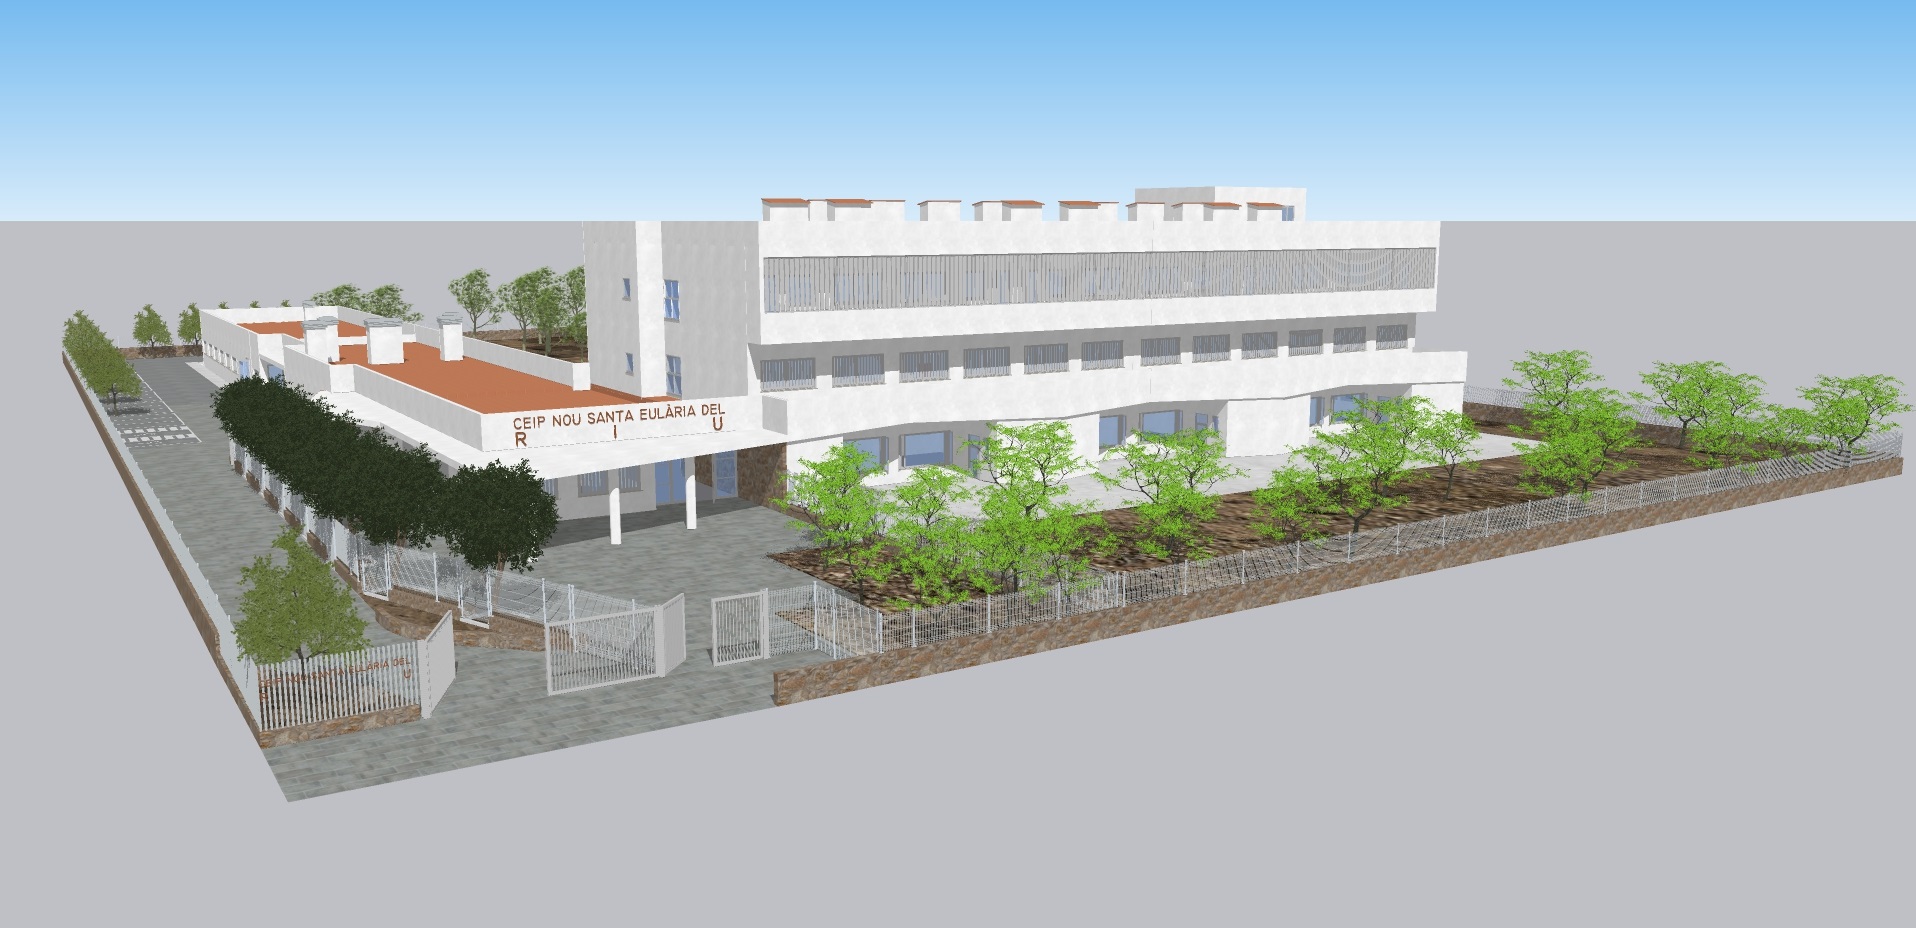 Imagen del artículo El IBISEC saca a licitación la redacción del proyecto de construcción del nuevo CEIP Santa Eulària des Riu por un importe de 141.207,79 euros